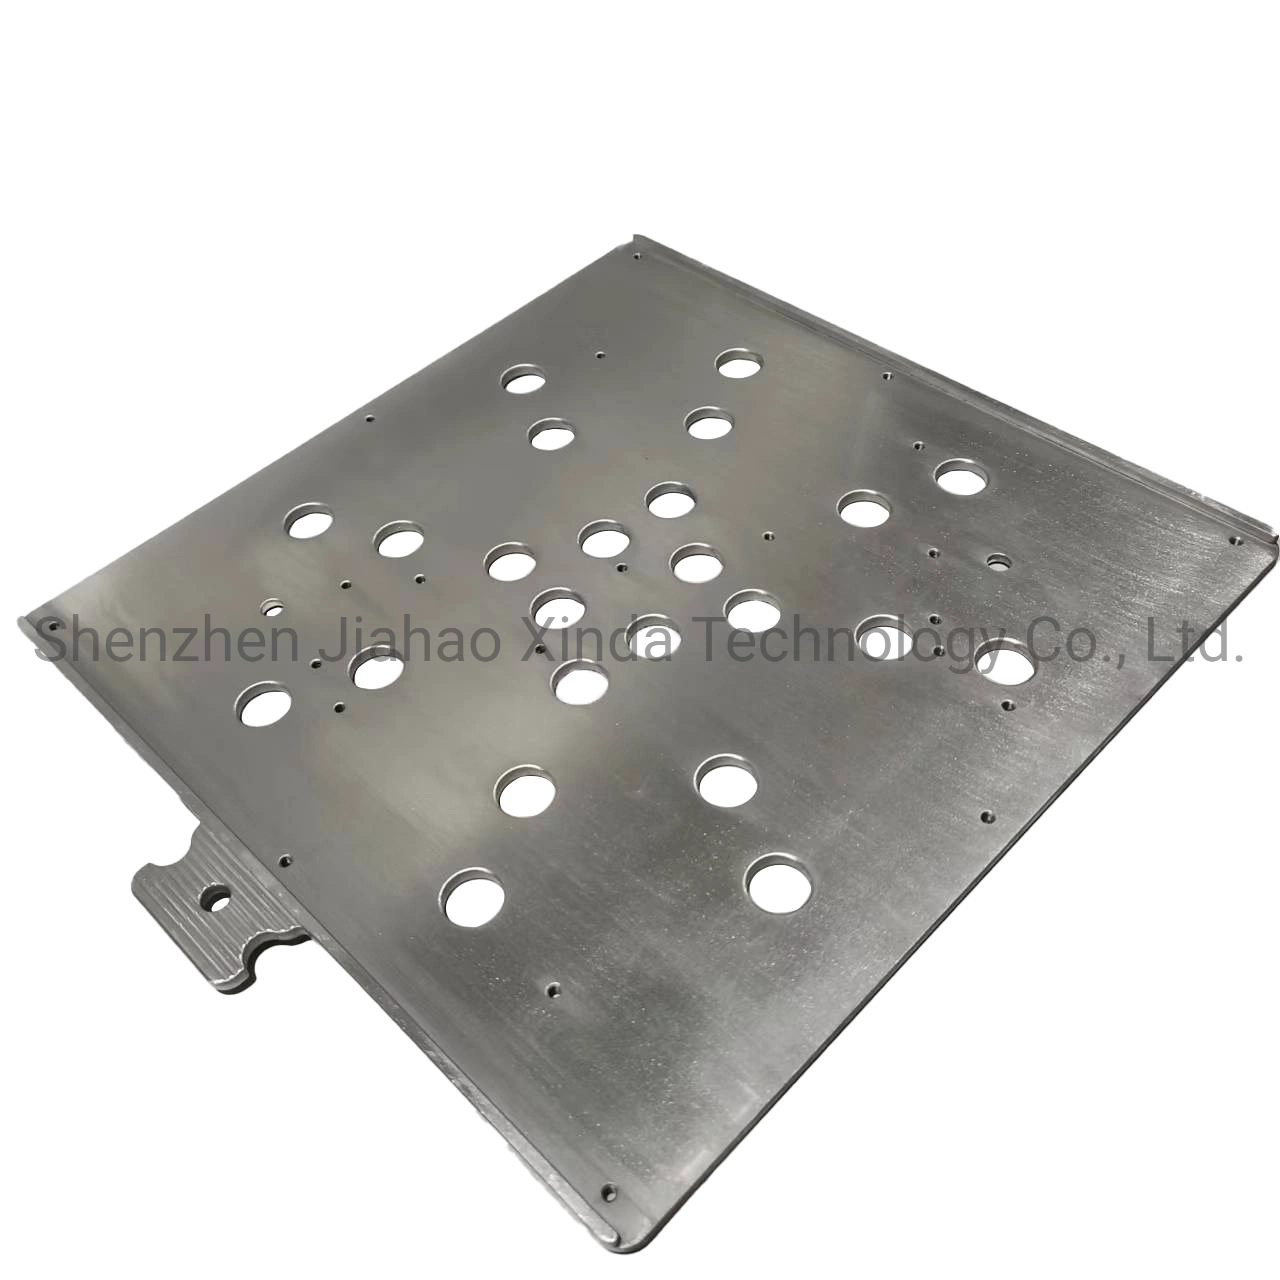 Produtos OEM personalizados alumínio metálico de precisão usinagem CNC Tornos// rodando/Die Casting/soldadura de peças para automóveis